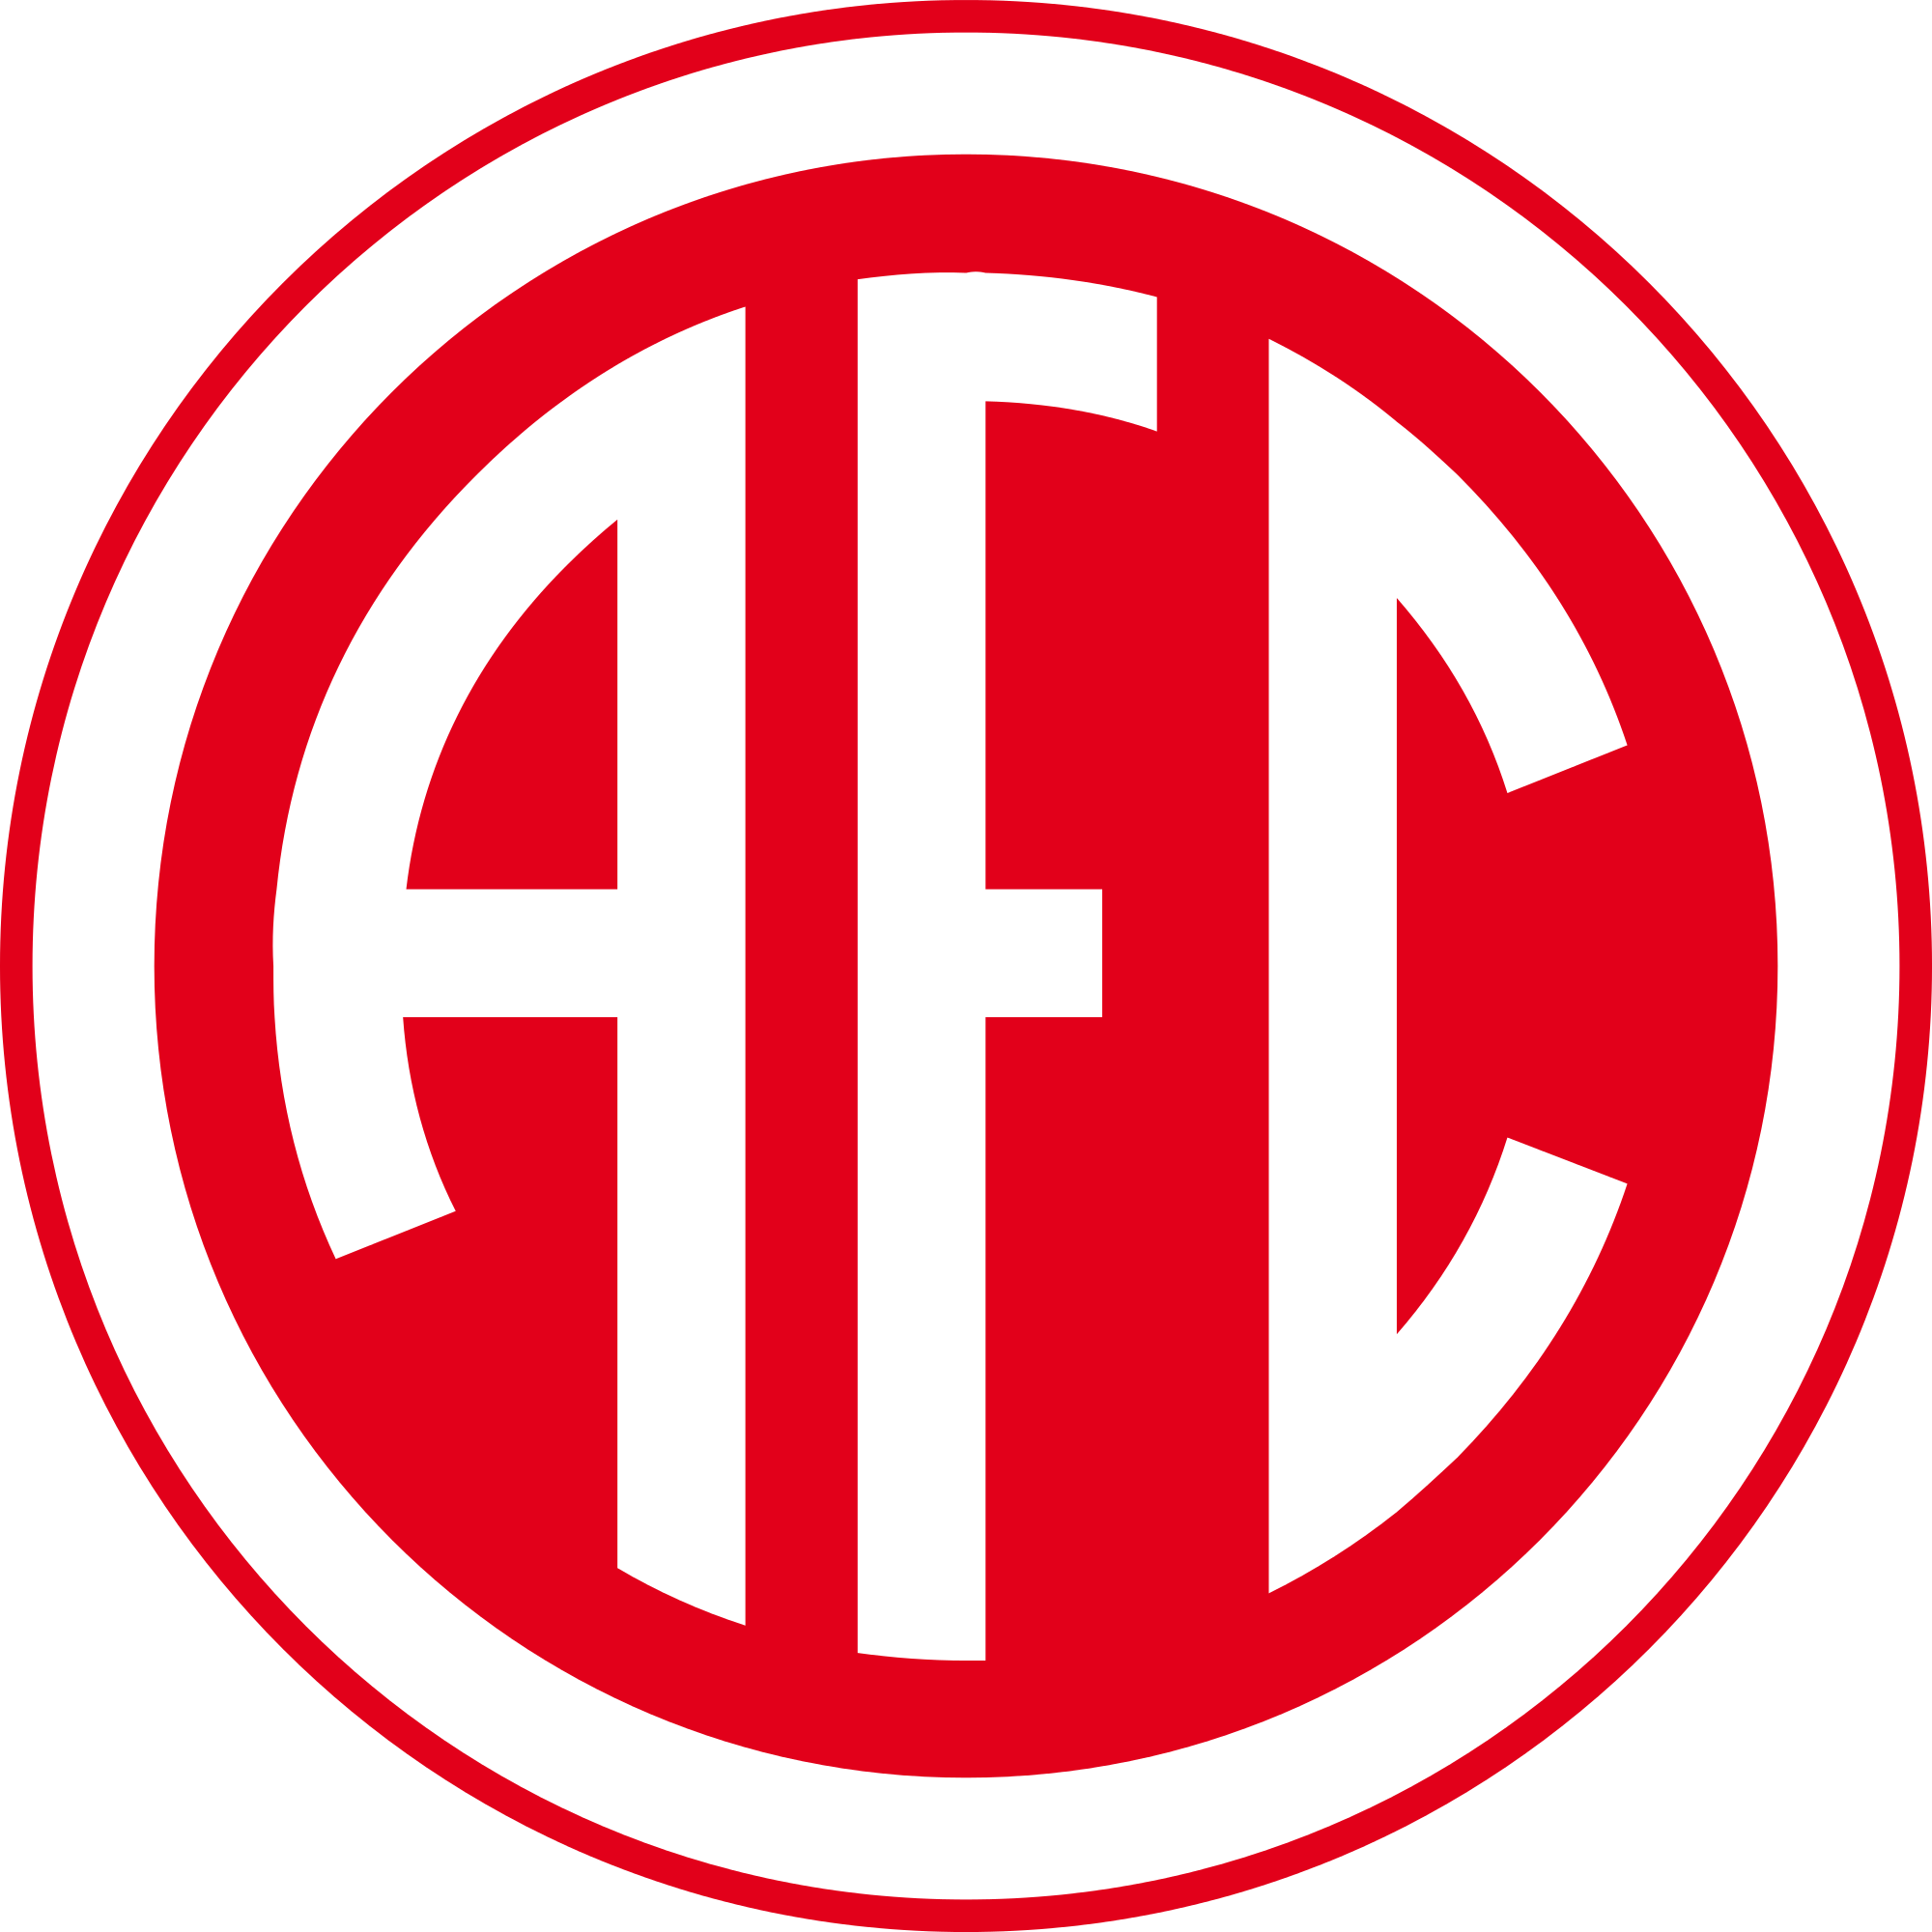 Times De Torneio De Liga De Futebol Americano Da Afc Emblem Set